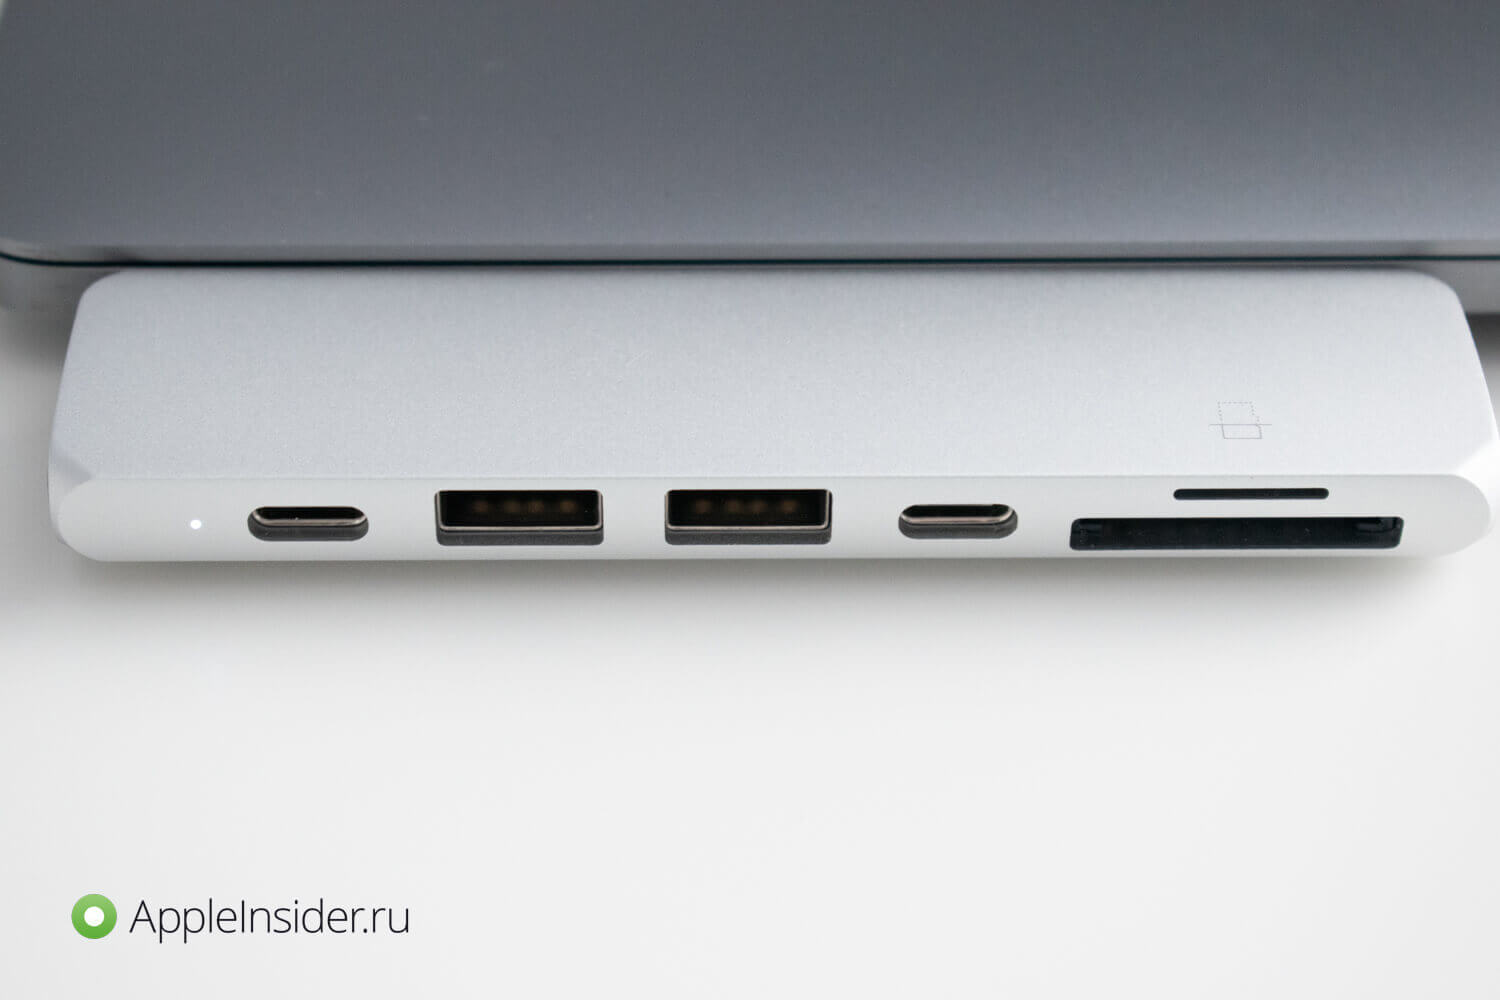 Какой USB-хаб для MacBook выбрать. Этот хаб стоил 6 500 рублей, но плата в основном идёт за дизайн и материалы. Фото.